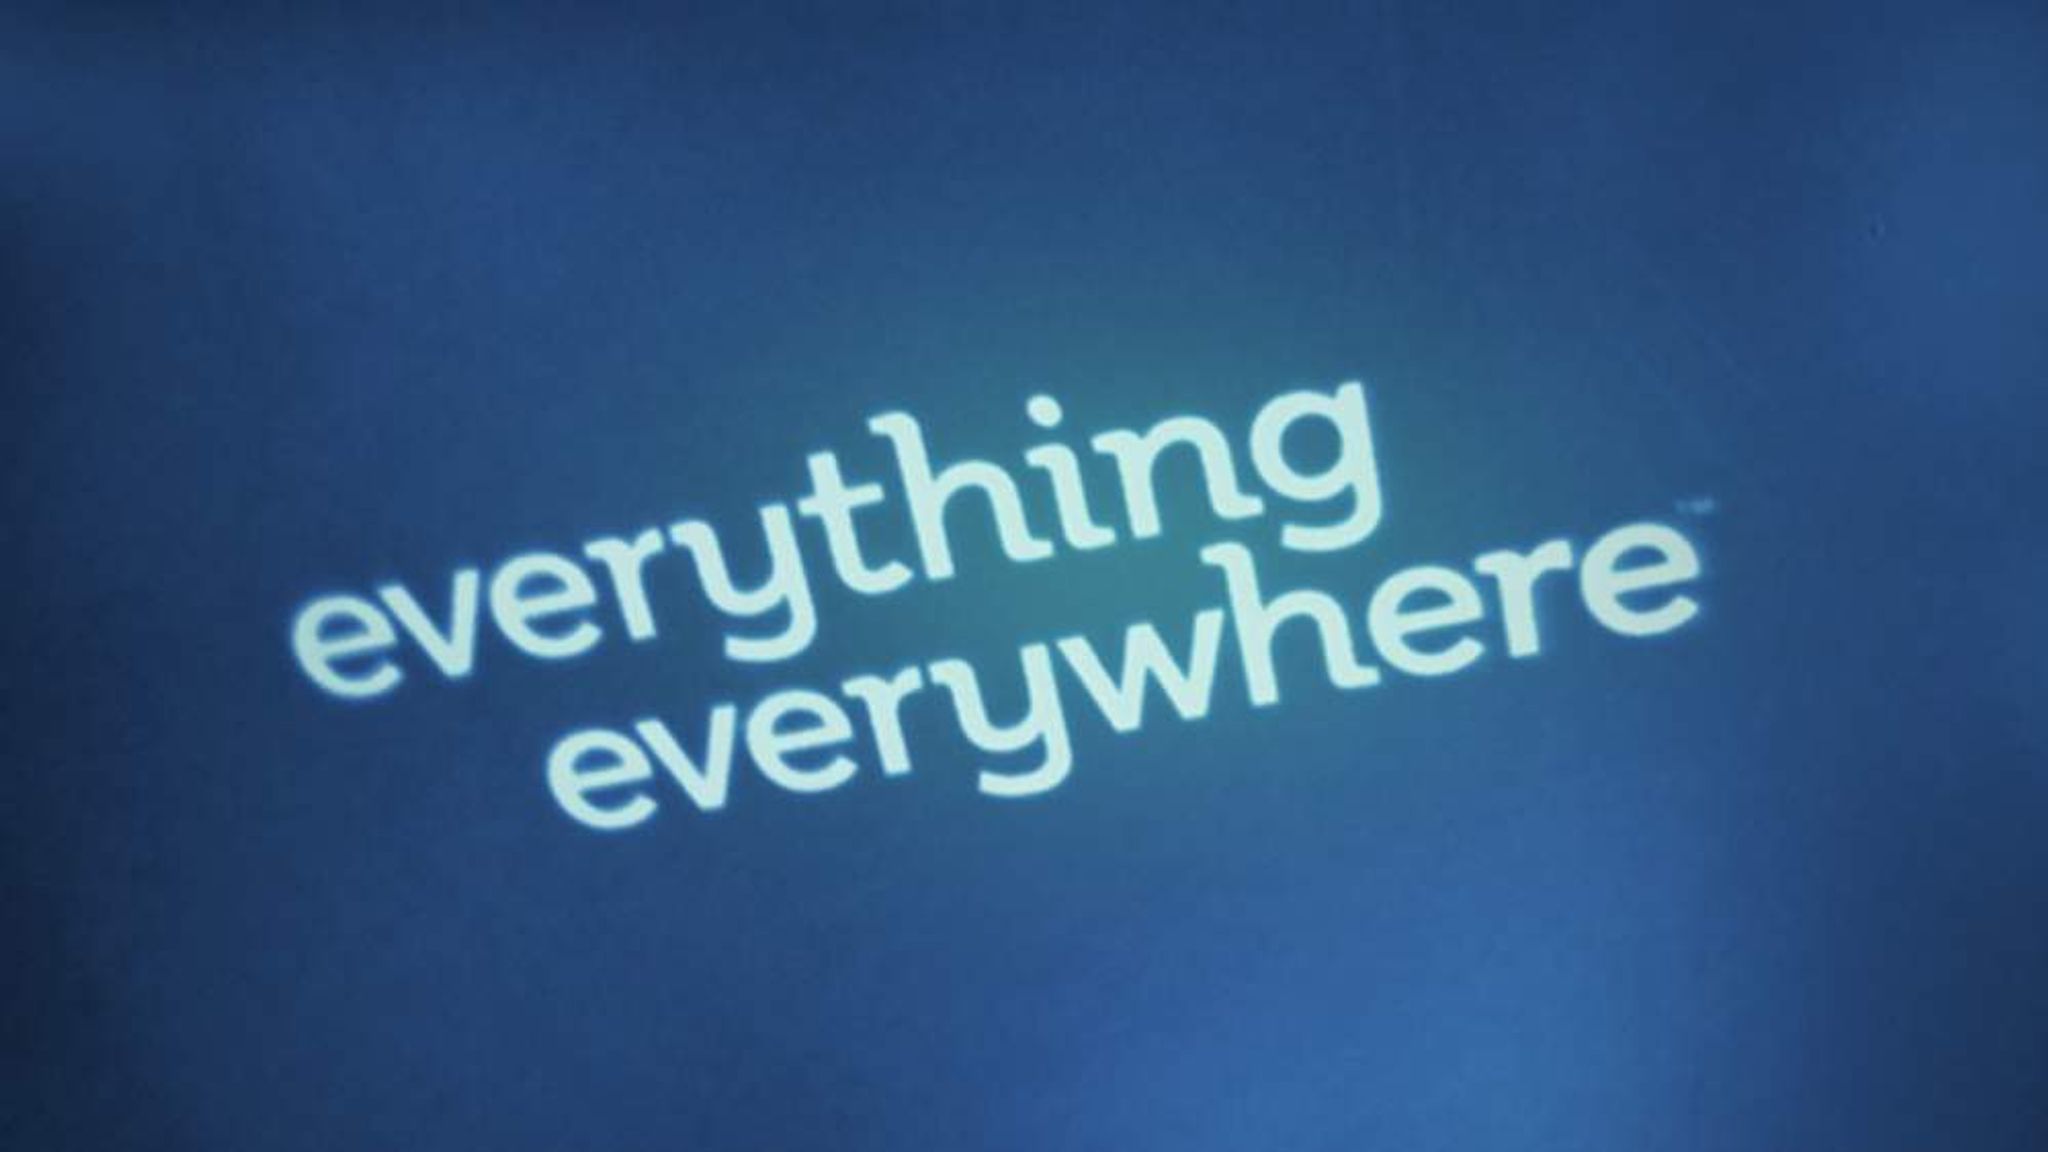 Everything everywhere. Everywhere logo. Просто быть камнем everything everywhere. Everything everywhere Acress PNG.